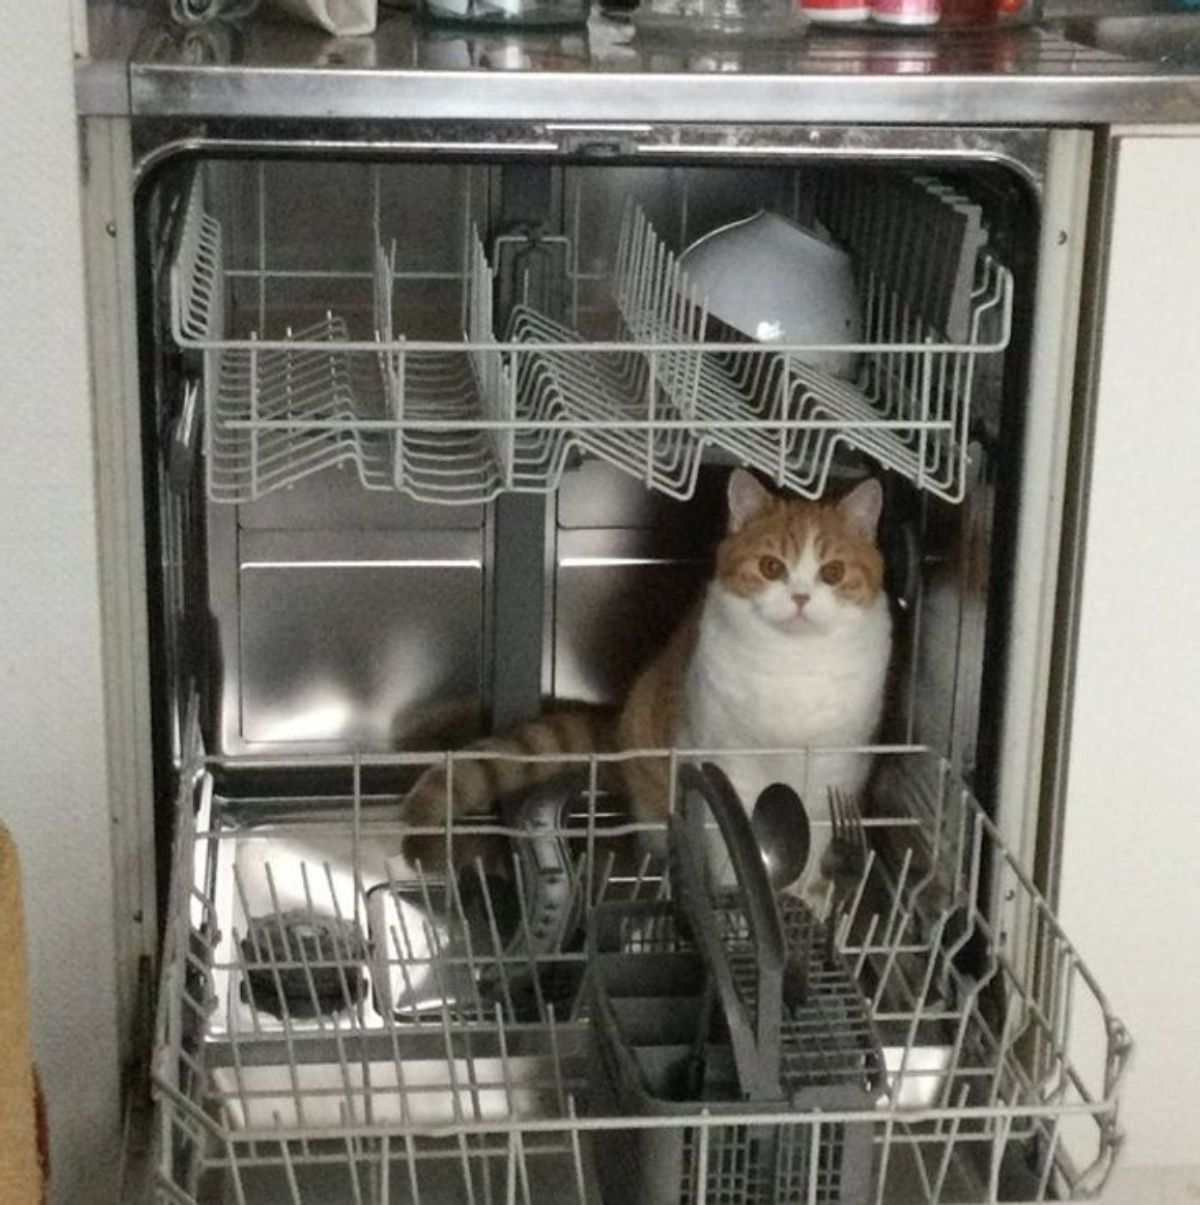 orange and white cat sitting inside a dishwasher